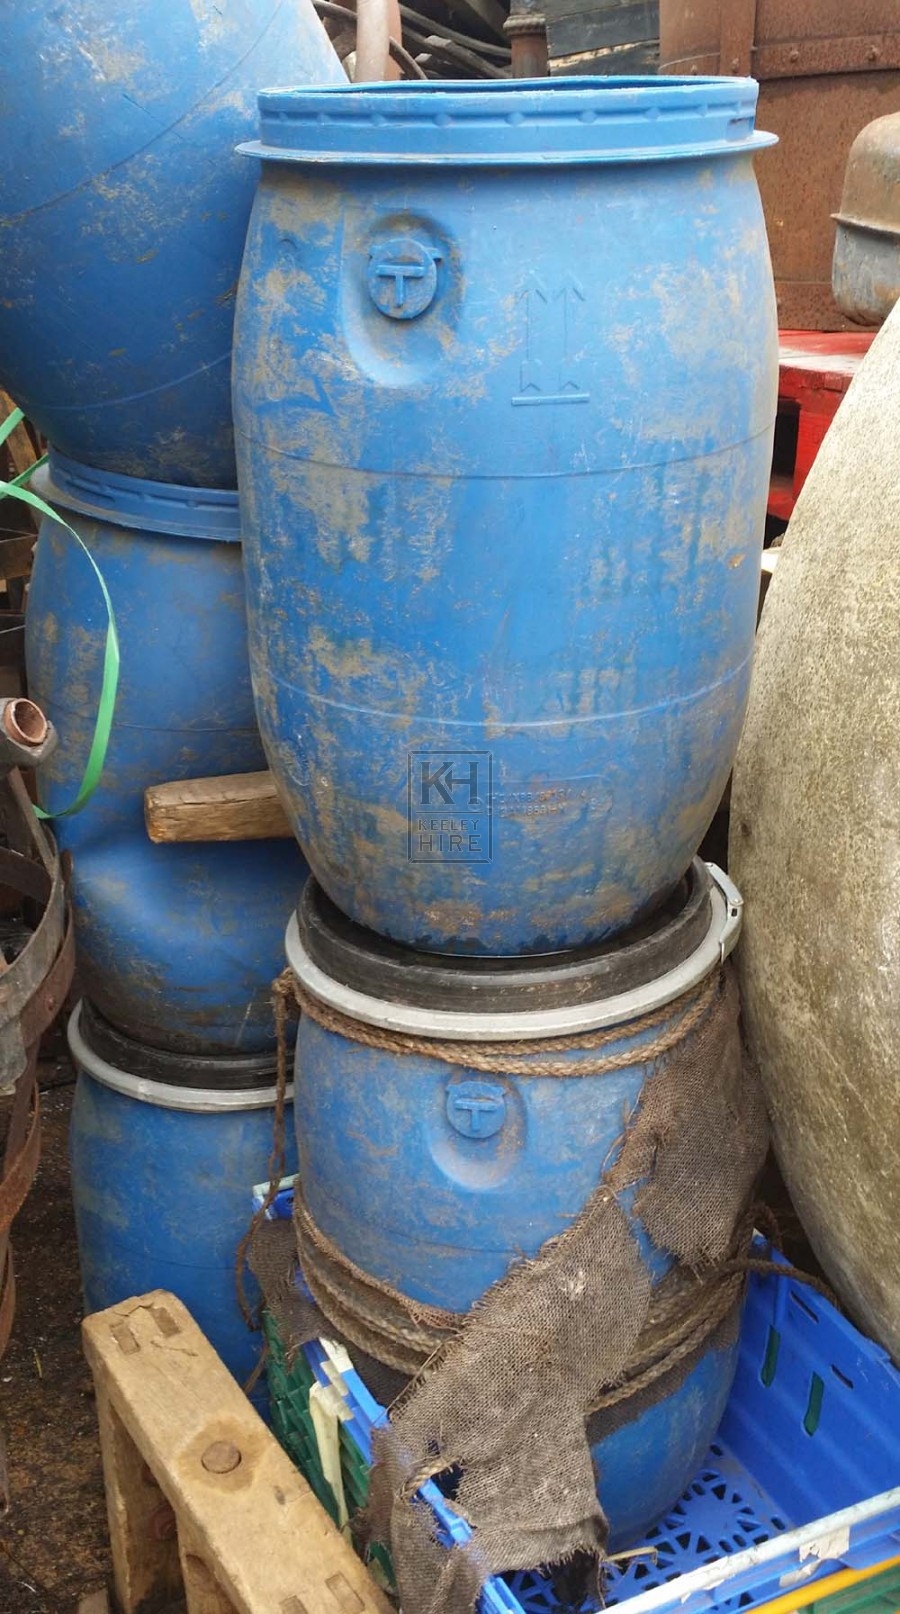 Blue plastic barrel